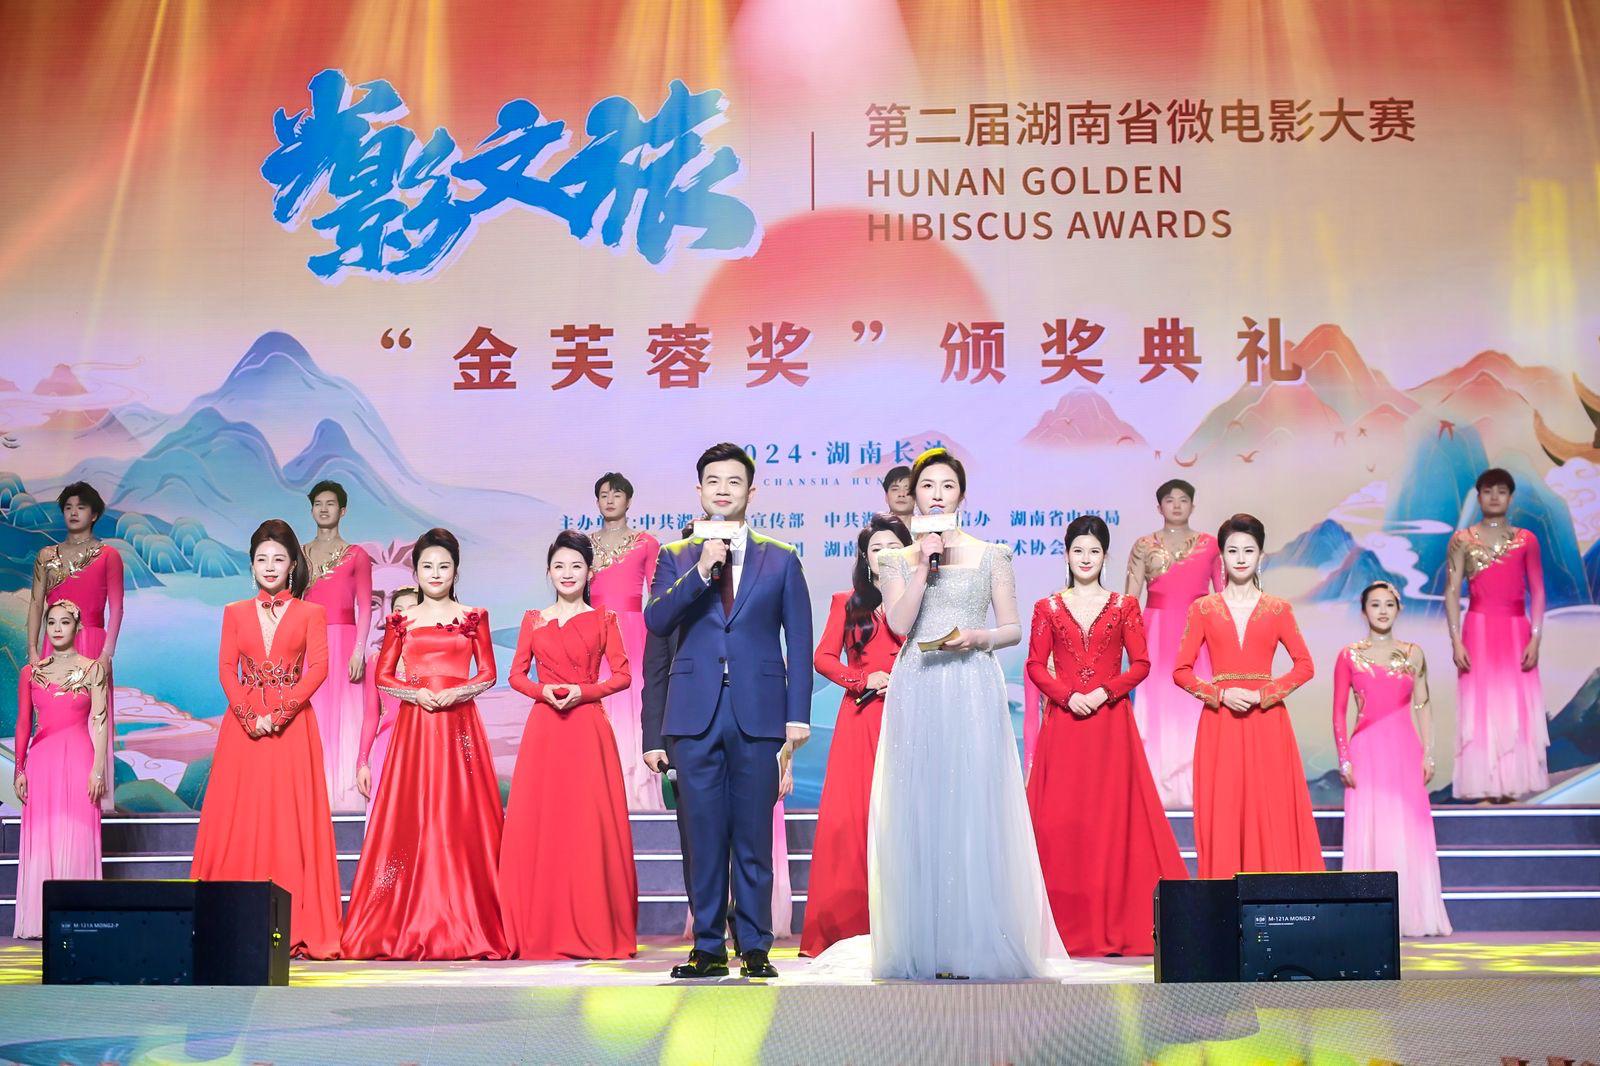 “光影文旅”第二届湖南省微电影大赛“金芙蓉奖”颁奖典礼现场。